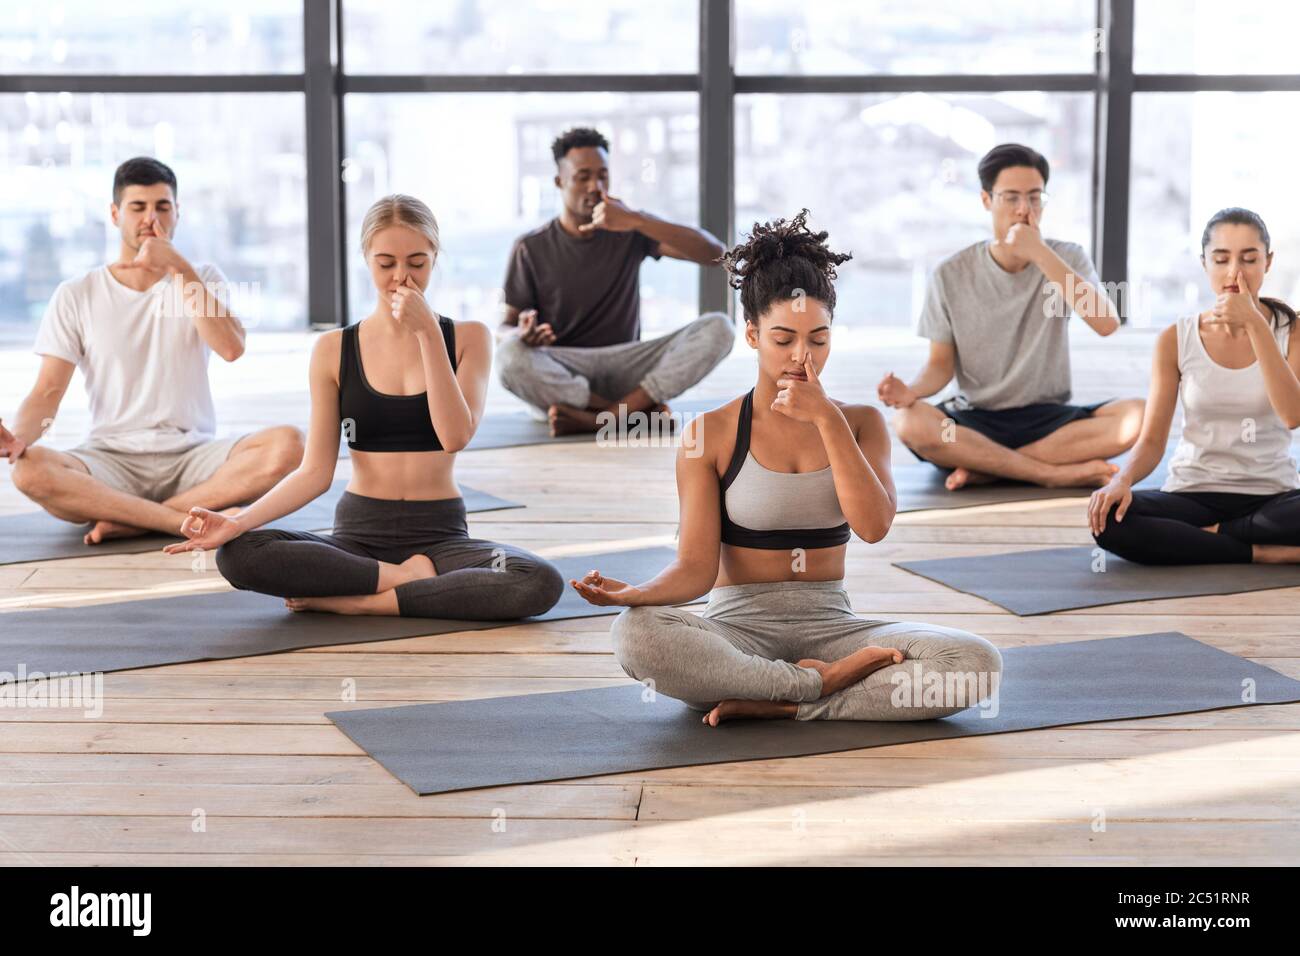 Hombres y mujeres jóvenes en un estudio de yoga practicando ejercicios de respiración alternada Foto de stock